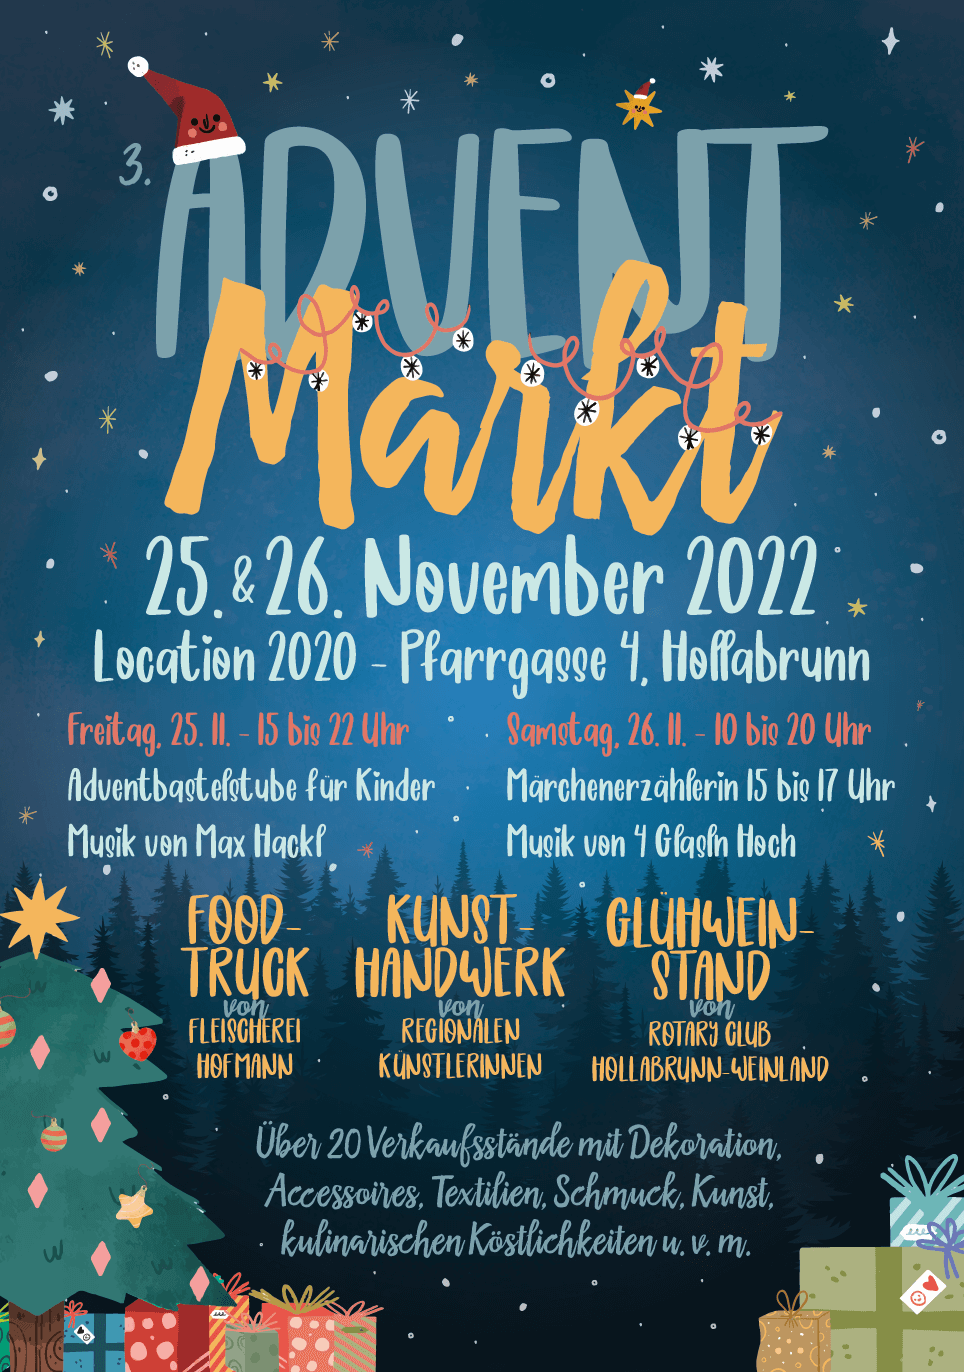 Adventmarkt am 25 und 26. November 2022